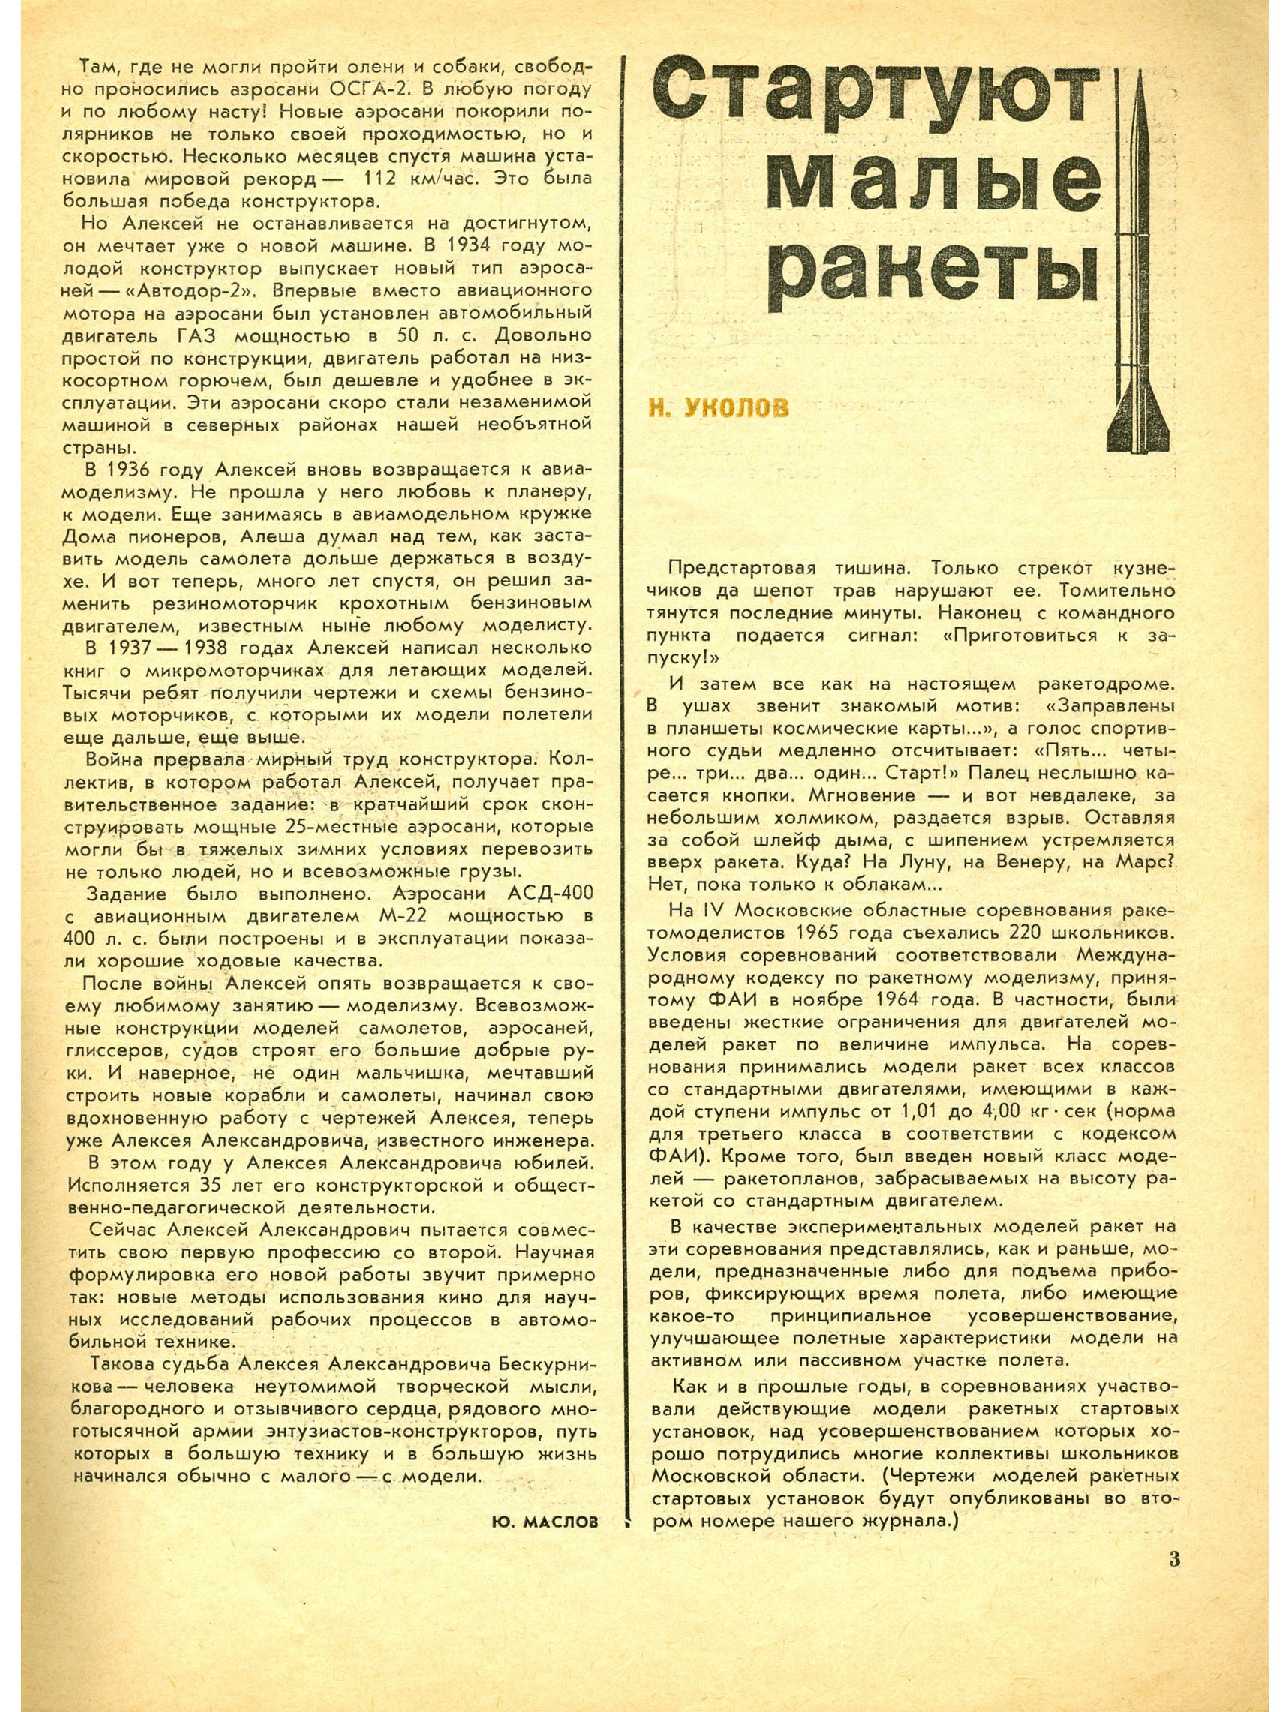 МК 1, 1966, 3 c.